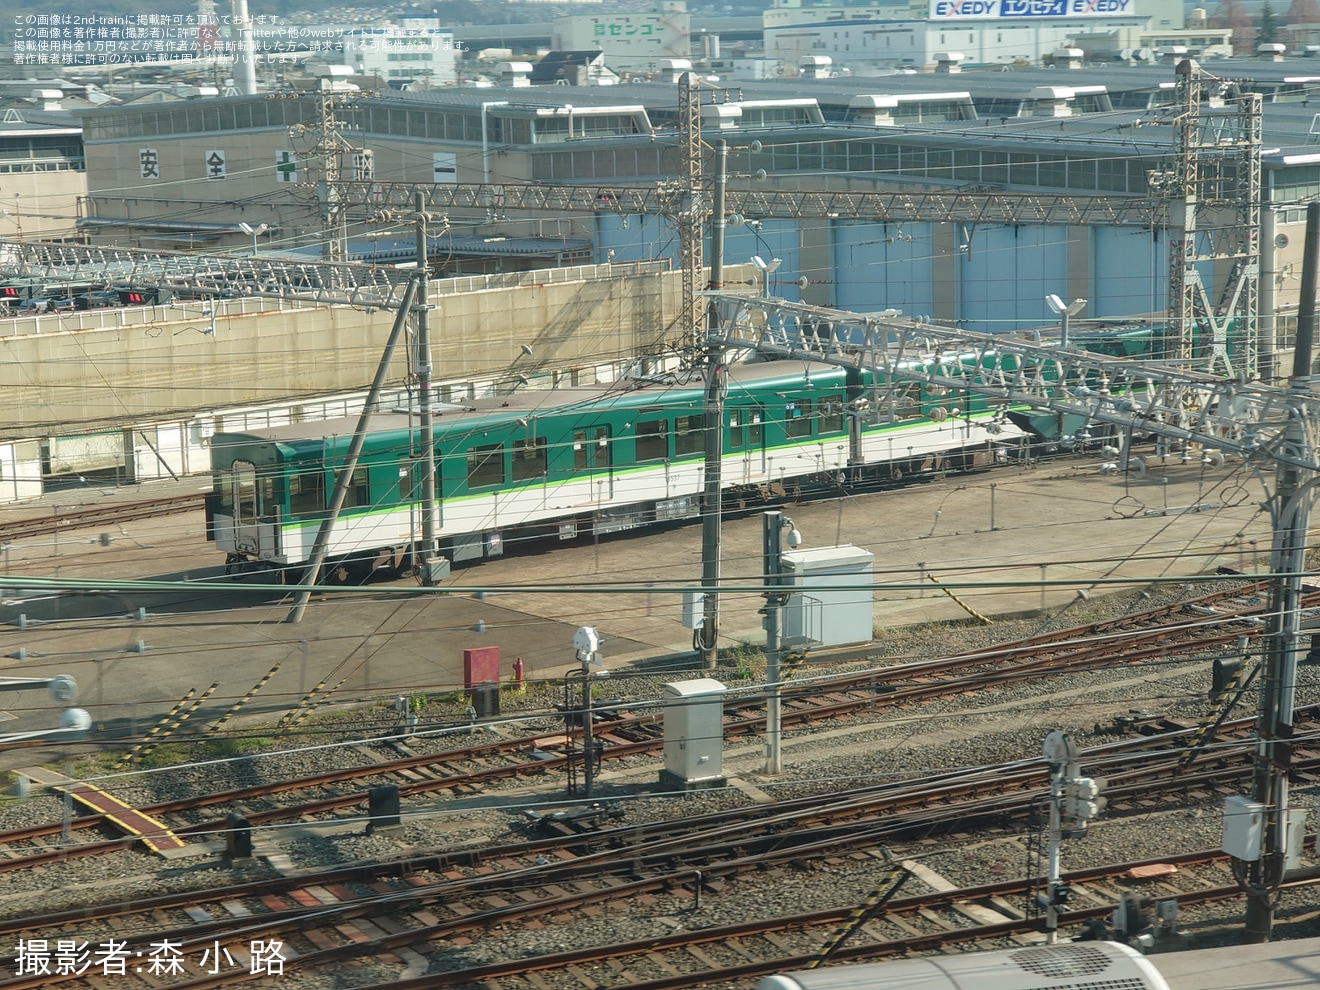 【京阪】元13750形と思われる13000系中間車両(京都方の車番は13537)が姿を見せるの拡大写真